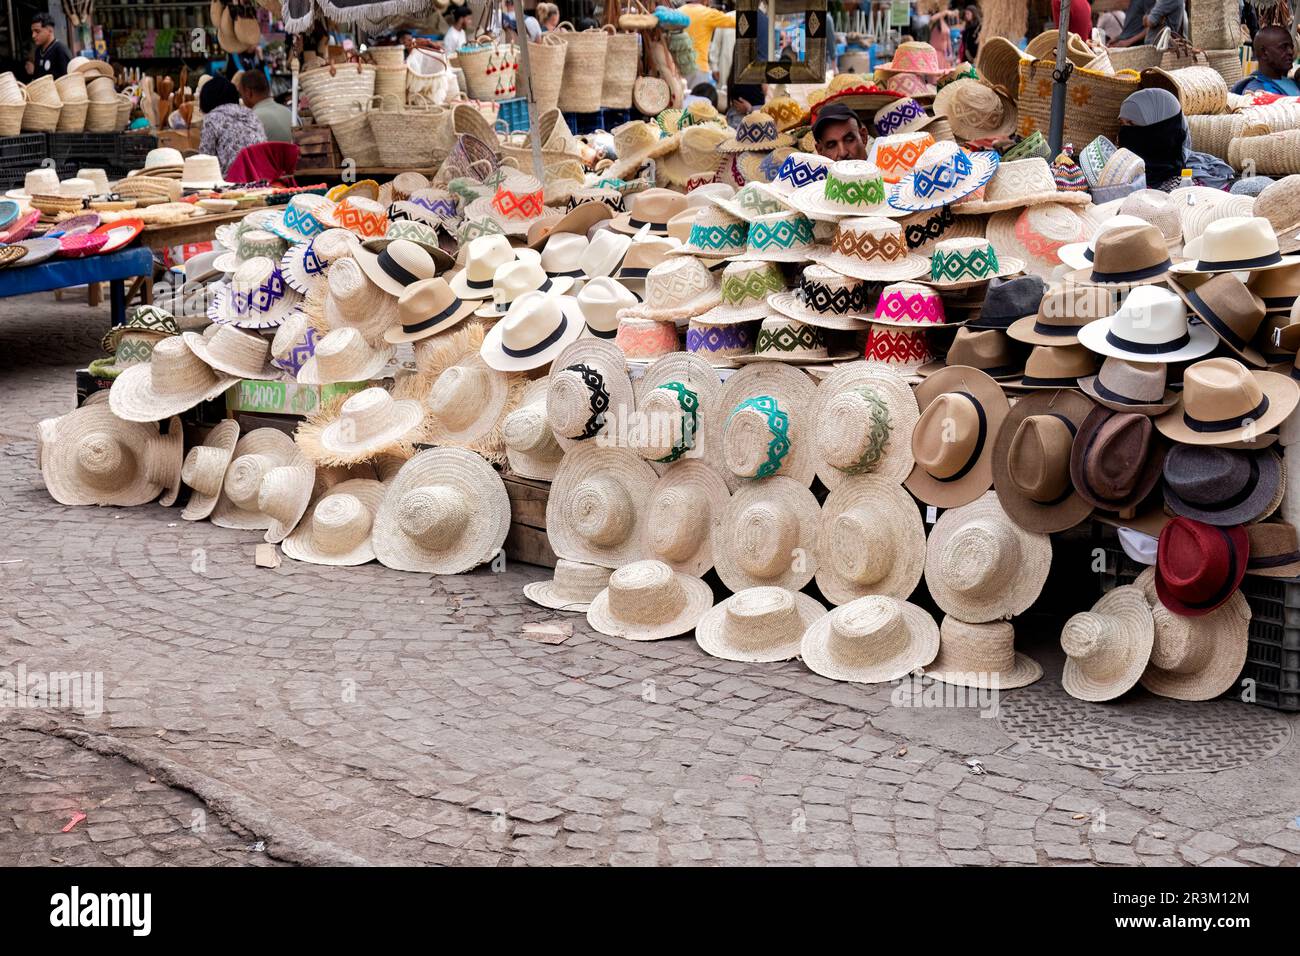 Ein offener Marktstand im zentralen Souk-Viertel der Medina, Marrakesch. Der Verkaufsstand, der handgefertigte Strohhüte verkauft, bietet eine große Auswahl an Hütten Stockfoto